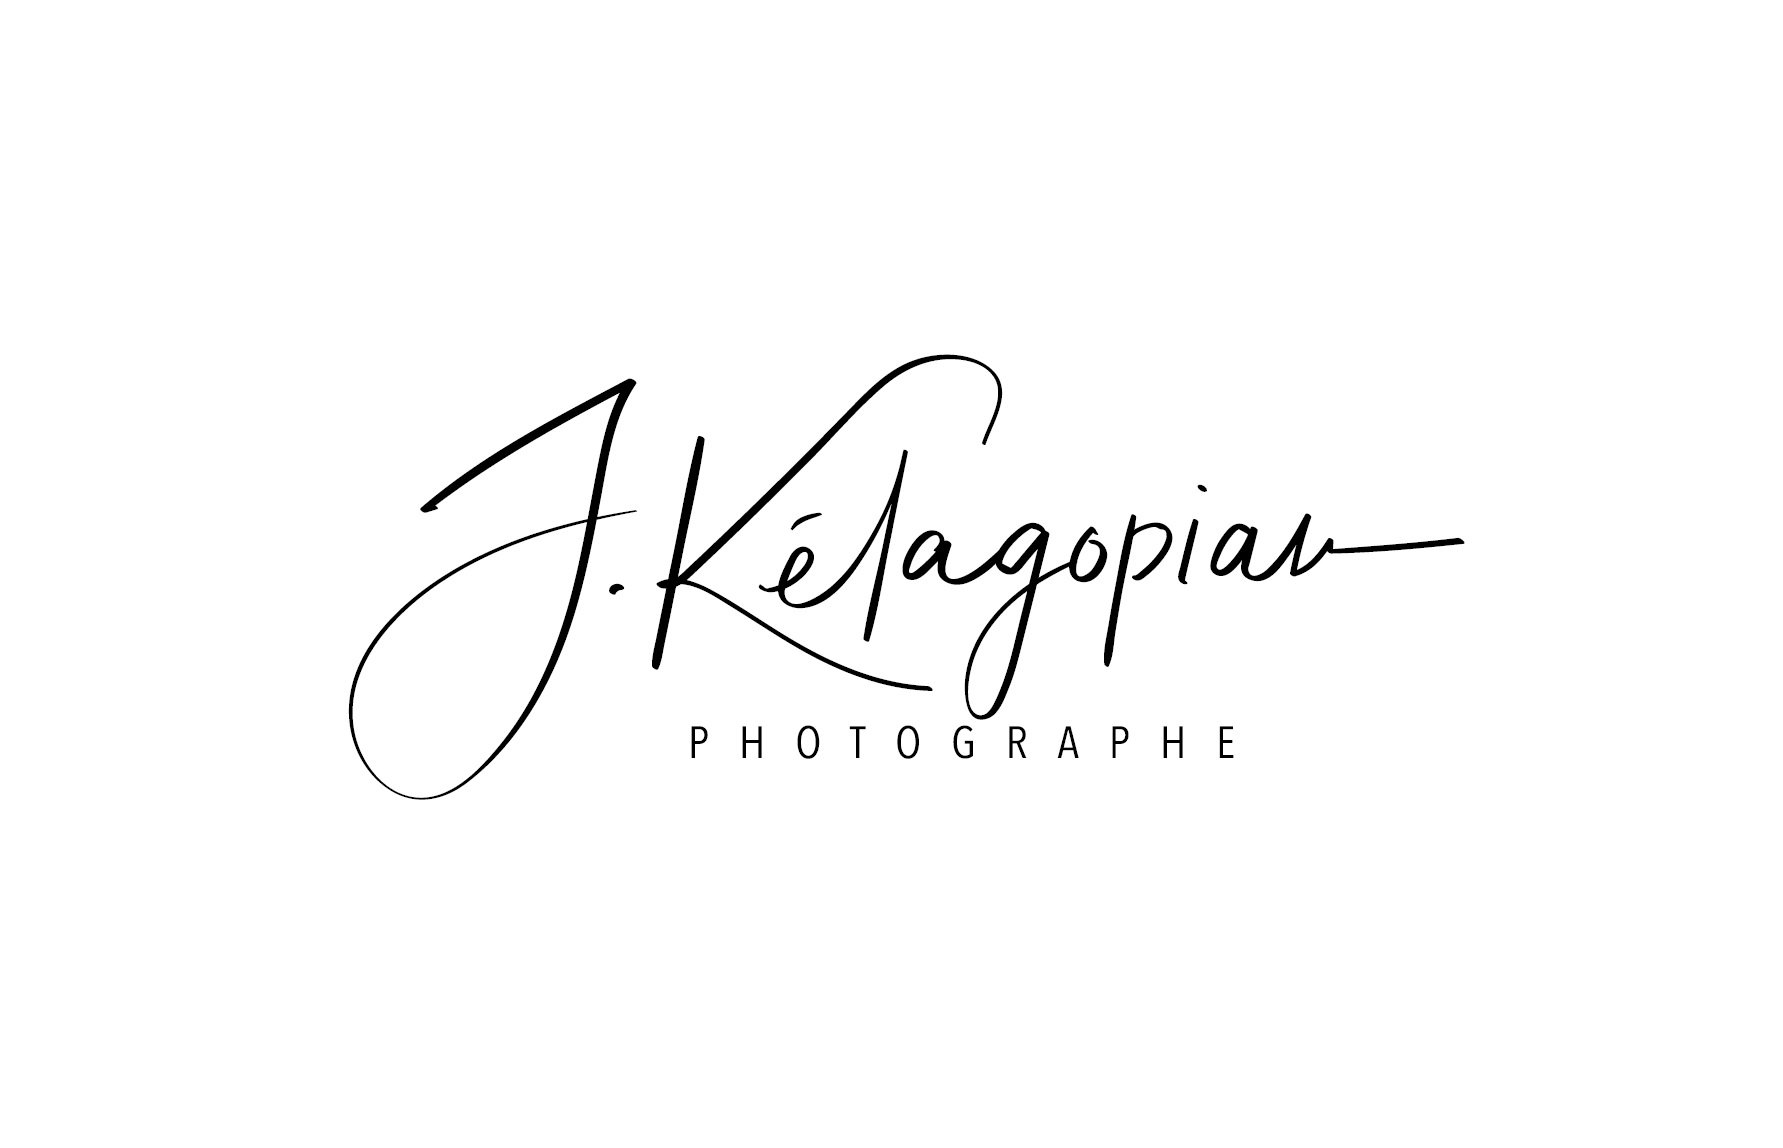 Kelagopian Photographe